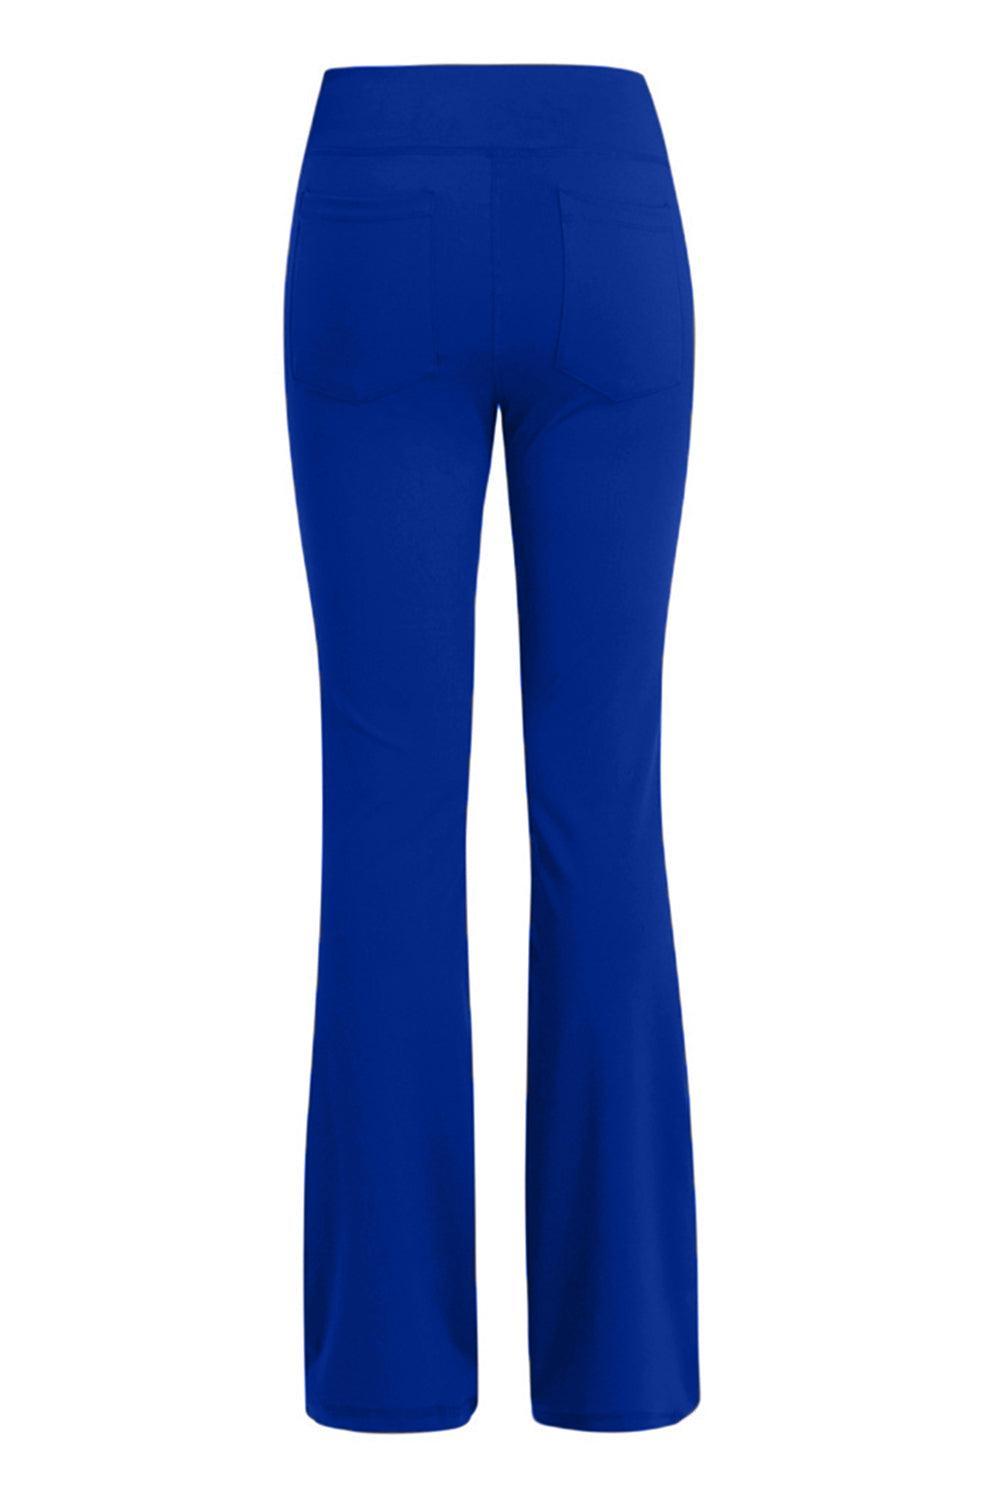 a women's blue pants with a high waist